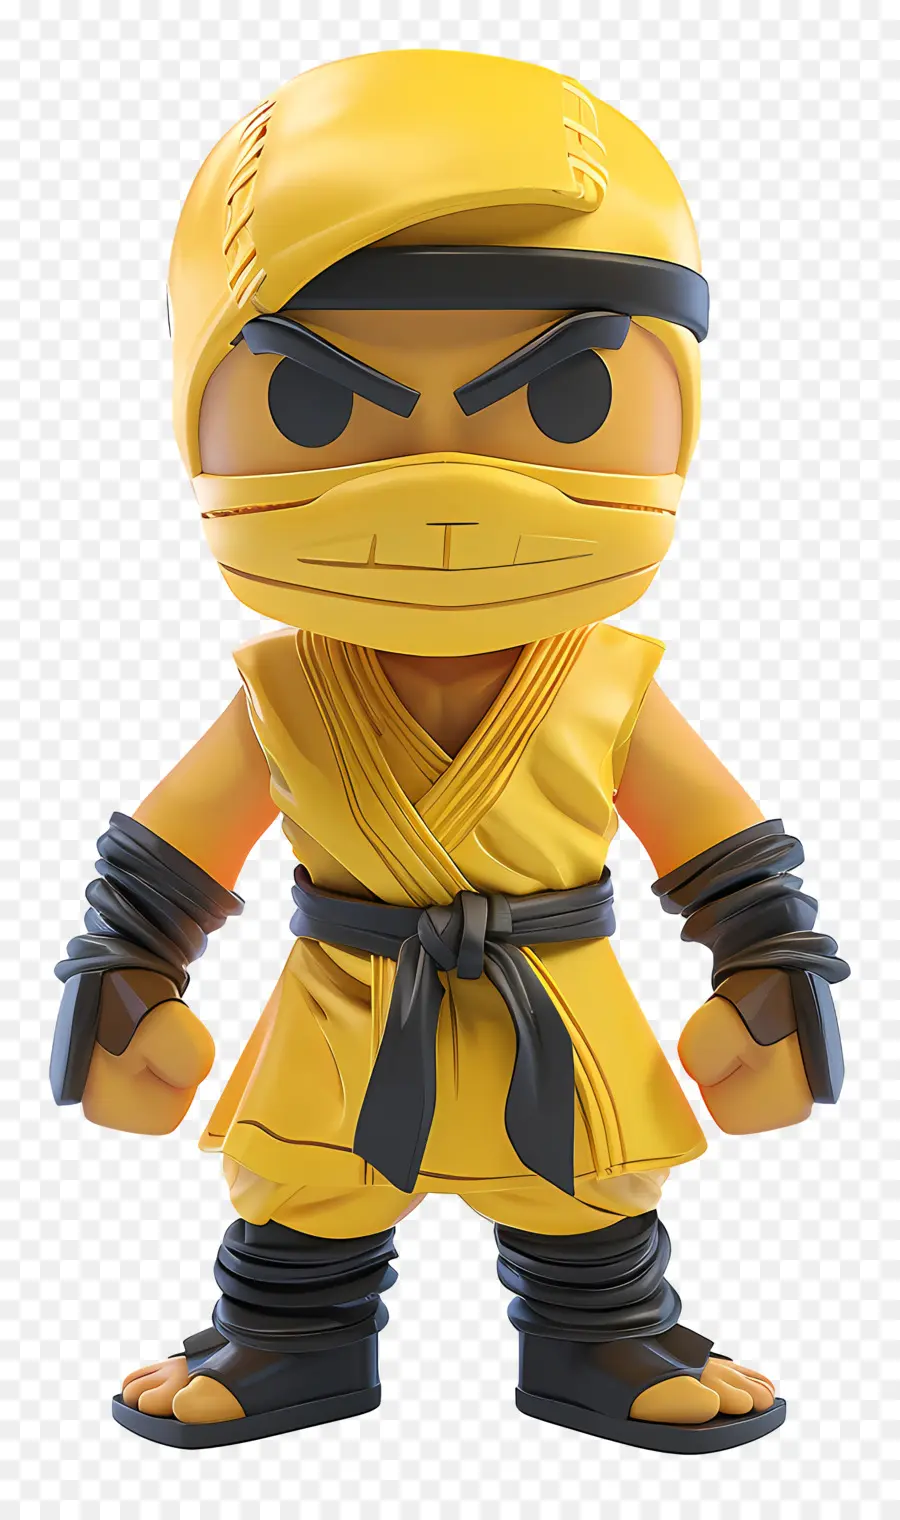 Gojo Action Hình đồ chơi hình nhân vật karate nhân vật màu vàng karate găng tay đen - Karate Toy Hình với trang phục thanh kiếm màu đỏ